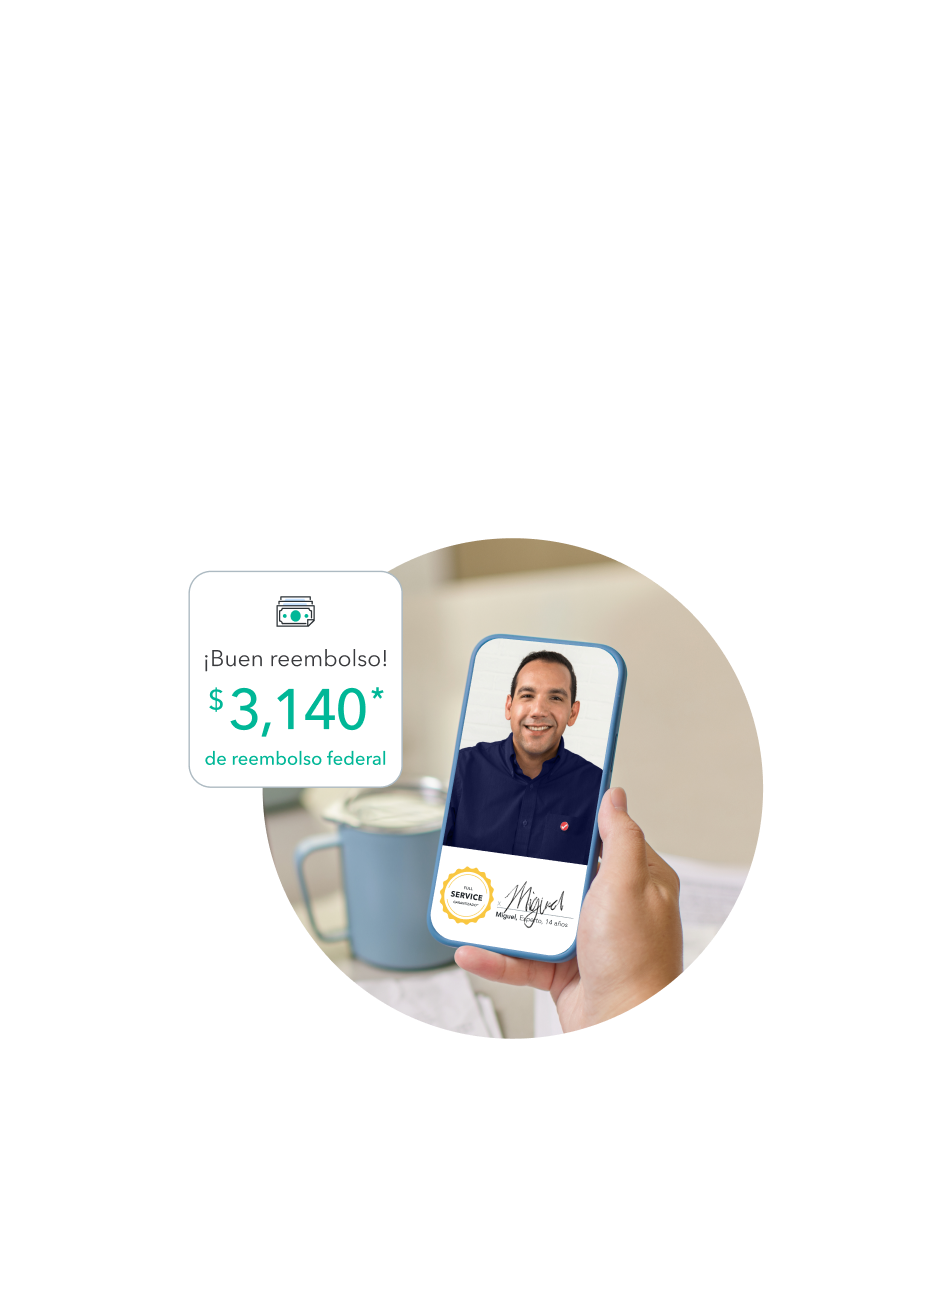 Miguel, experto en impuestos bilingüe, le ayuda a su cliente a obtener un reembolso de $3,140.